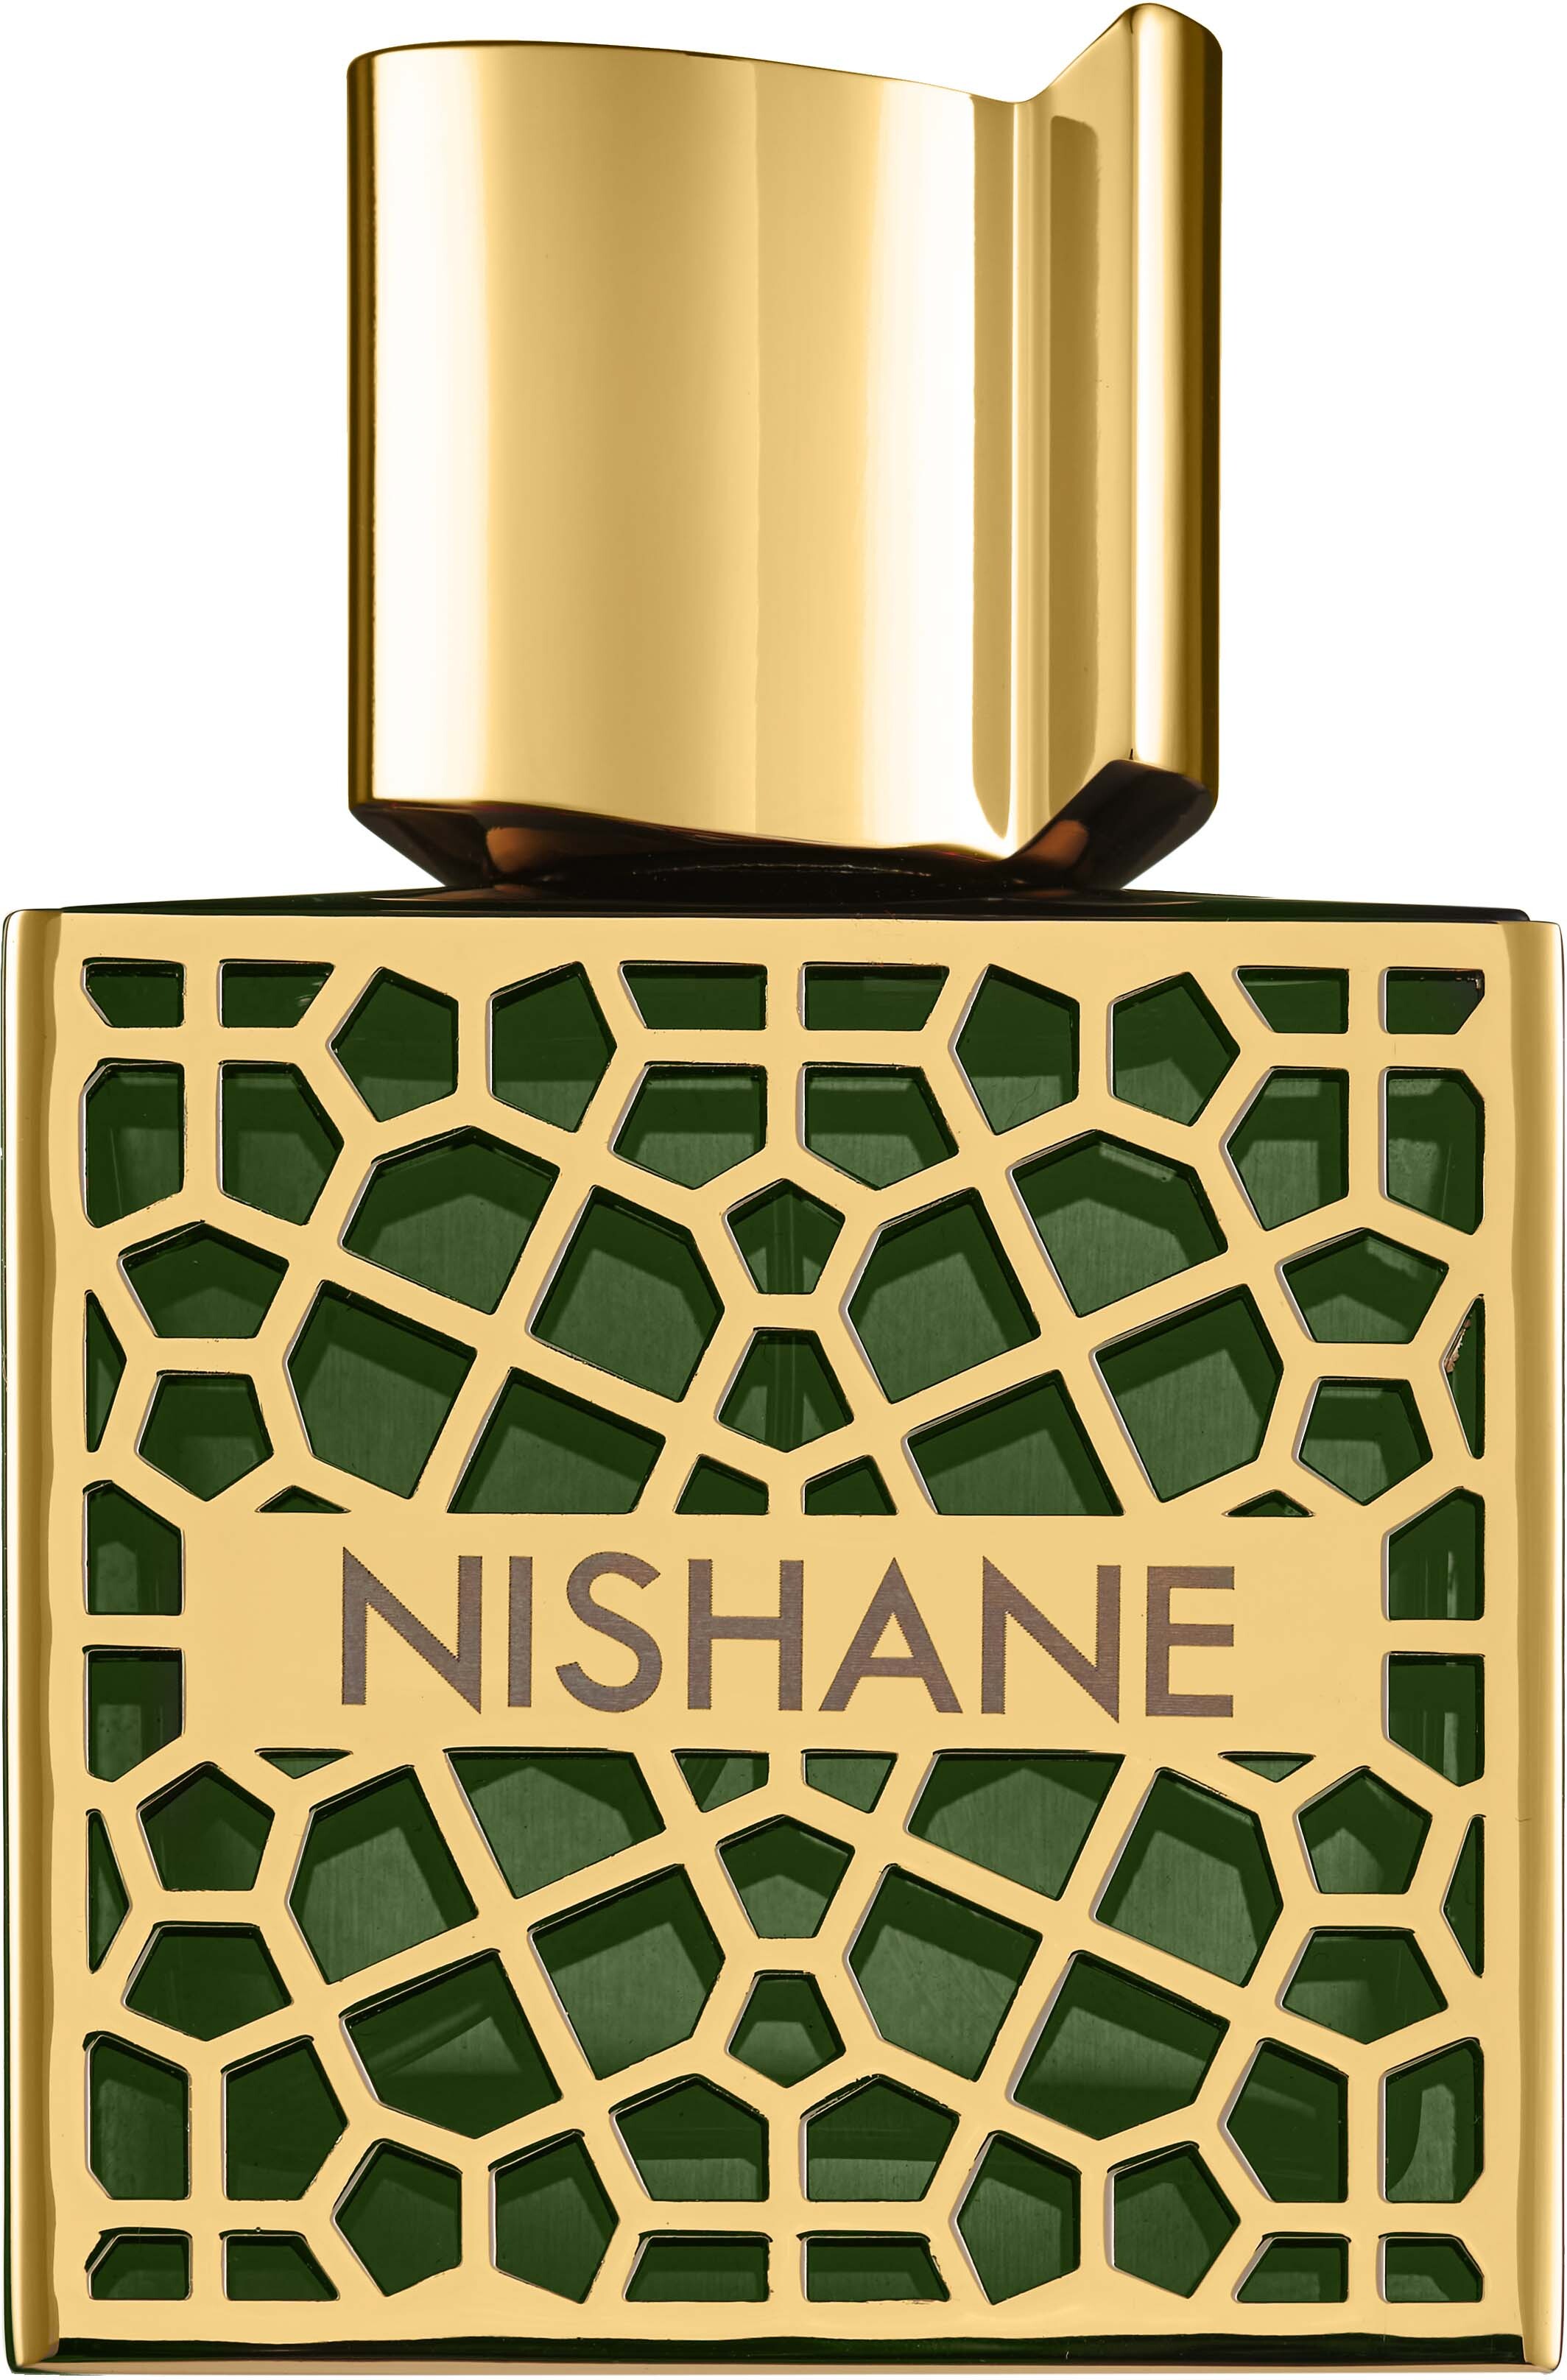 Nishane Shem 50 ml